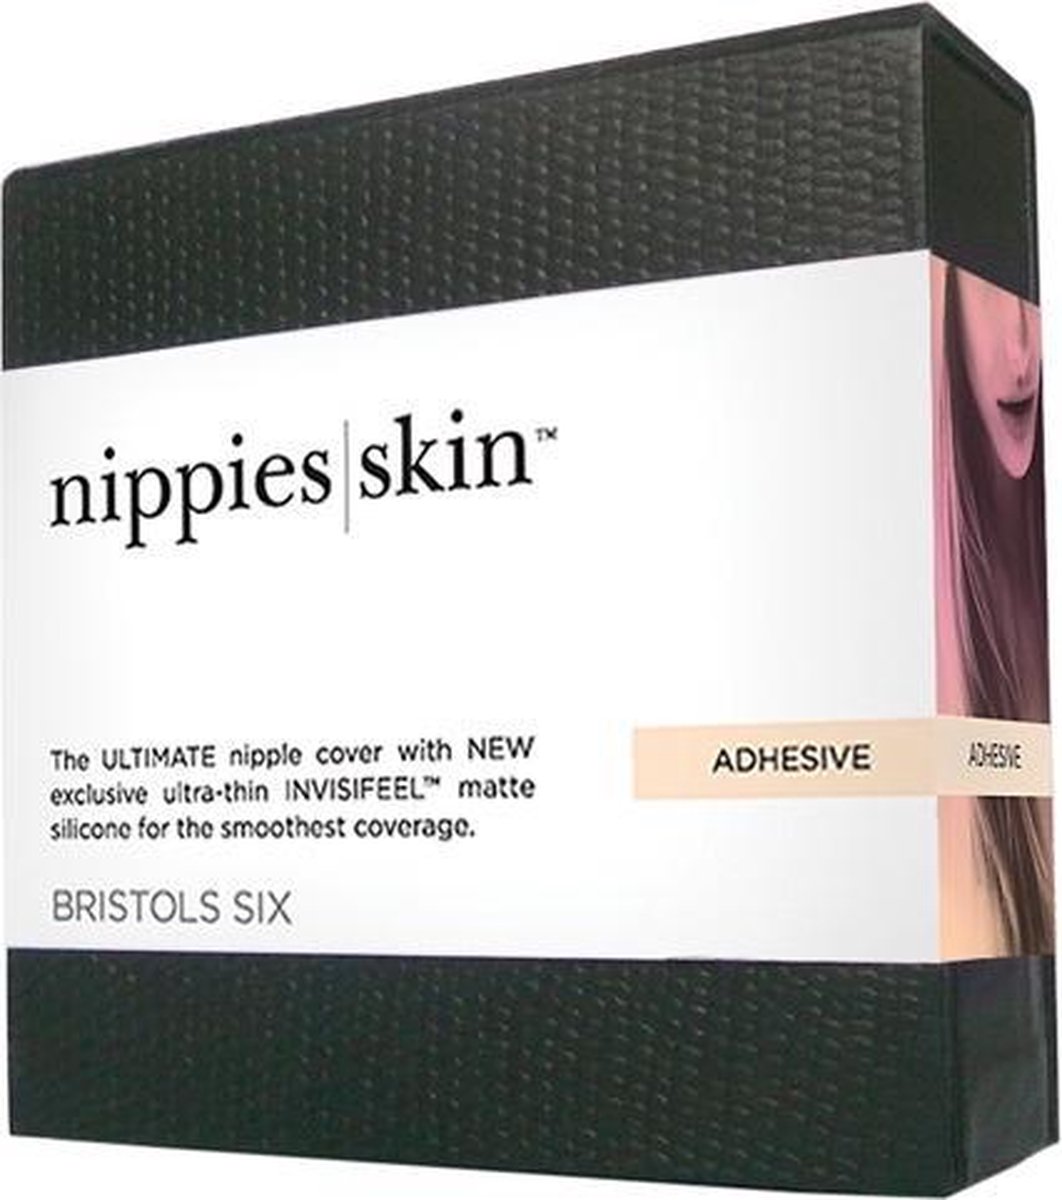 Bristols 6 Nippies Skin Plus